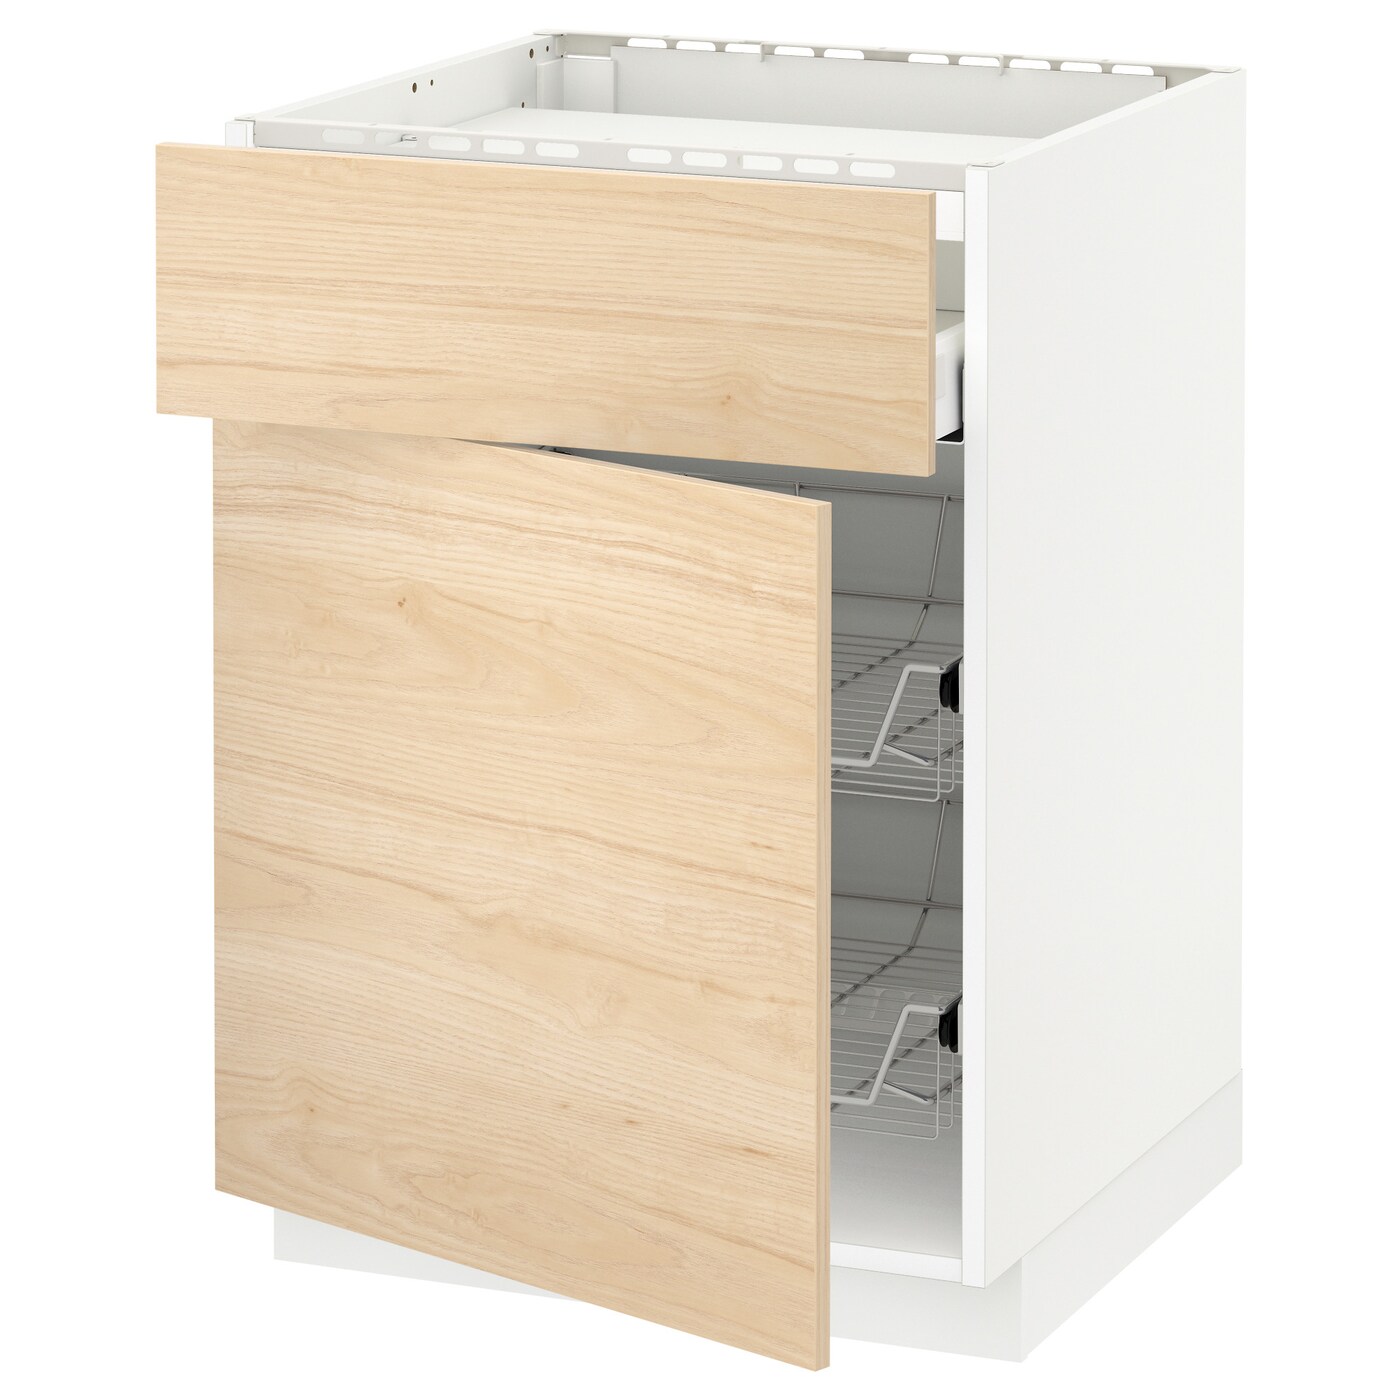 Напольный шкаф - IKEA METOD MAXIMERA, 88x62x60см, белый/светлый ясень, МЕТОД МАКСИМЕРА ИКЕА